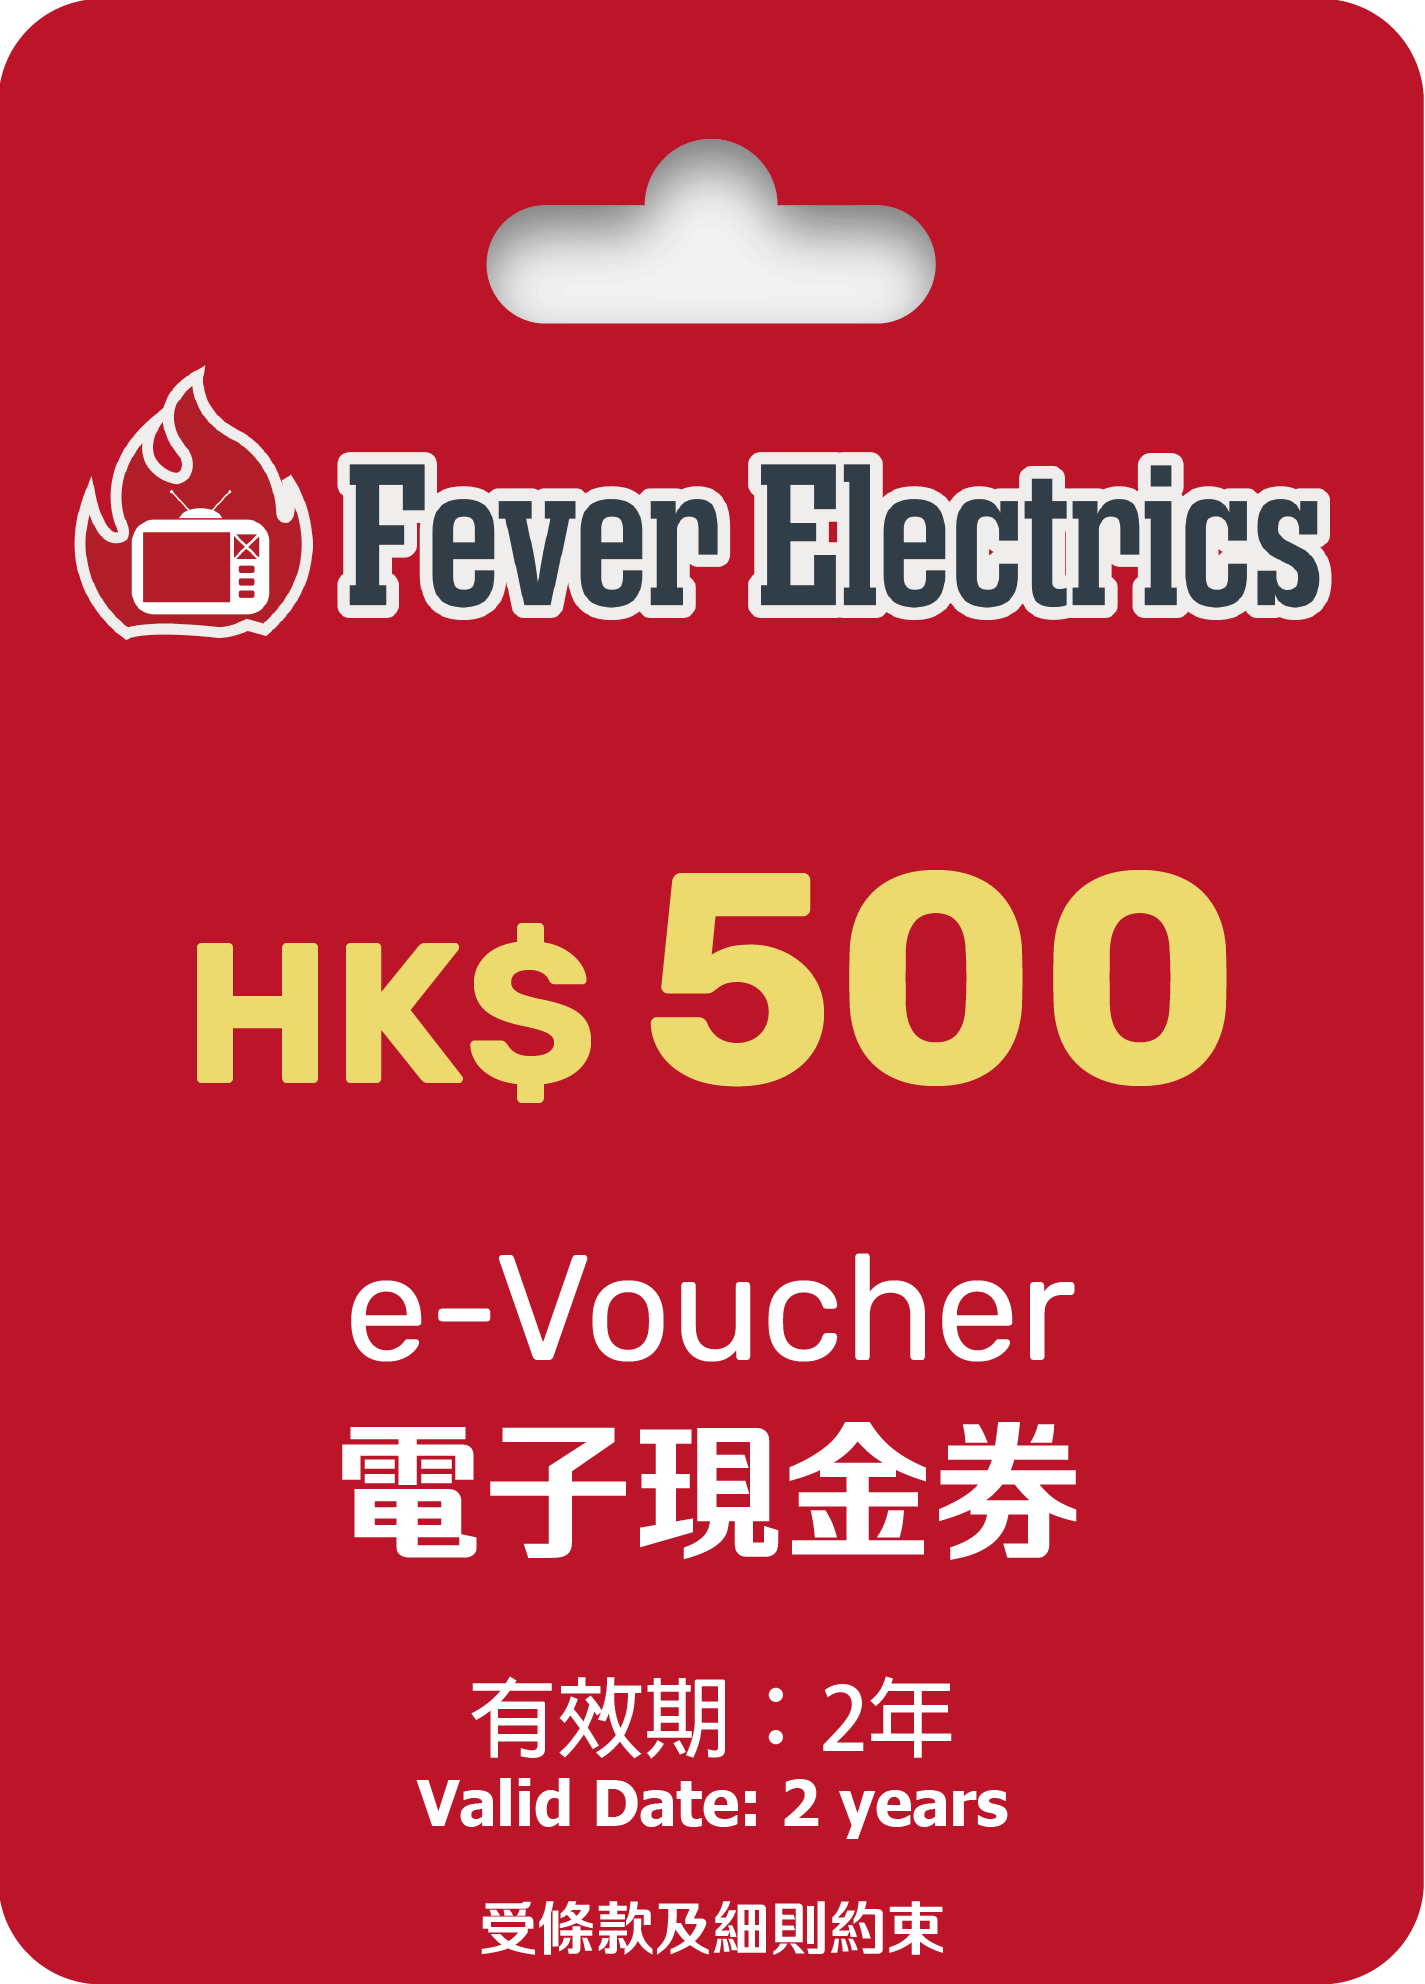 HK$500 Fever e - Voucher (電子現金券) - Fever Electrics 電器熱網購平台